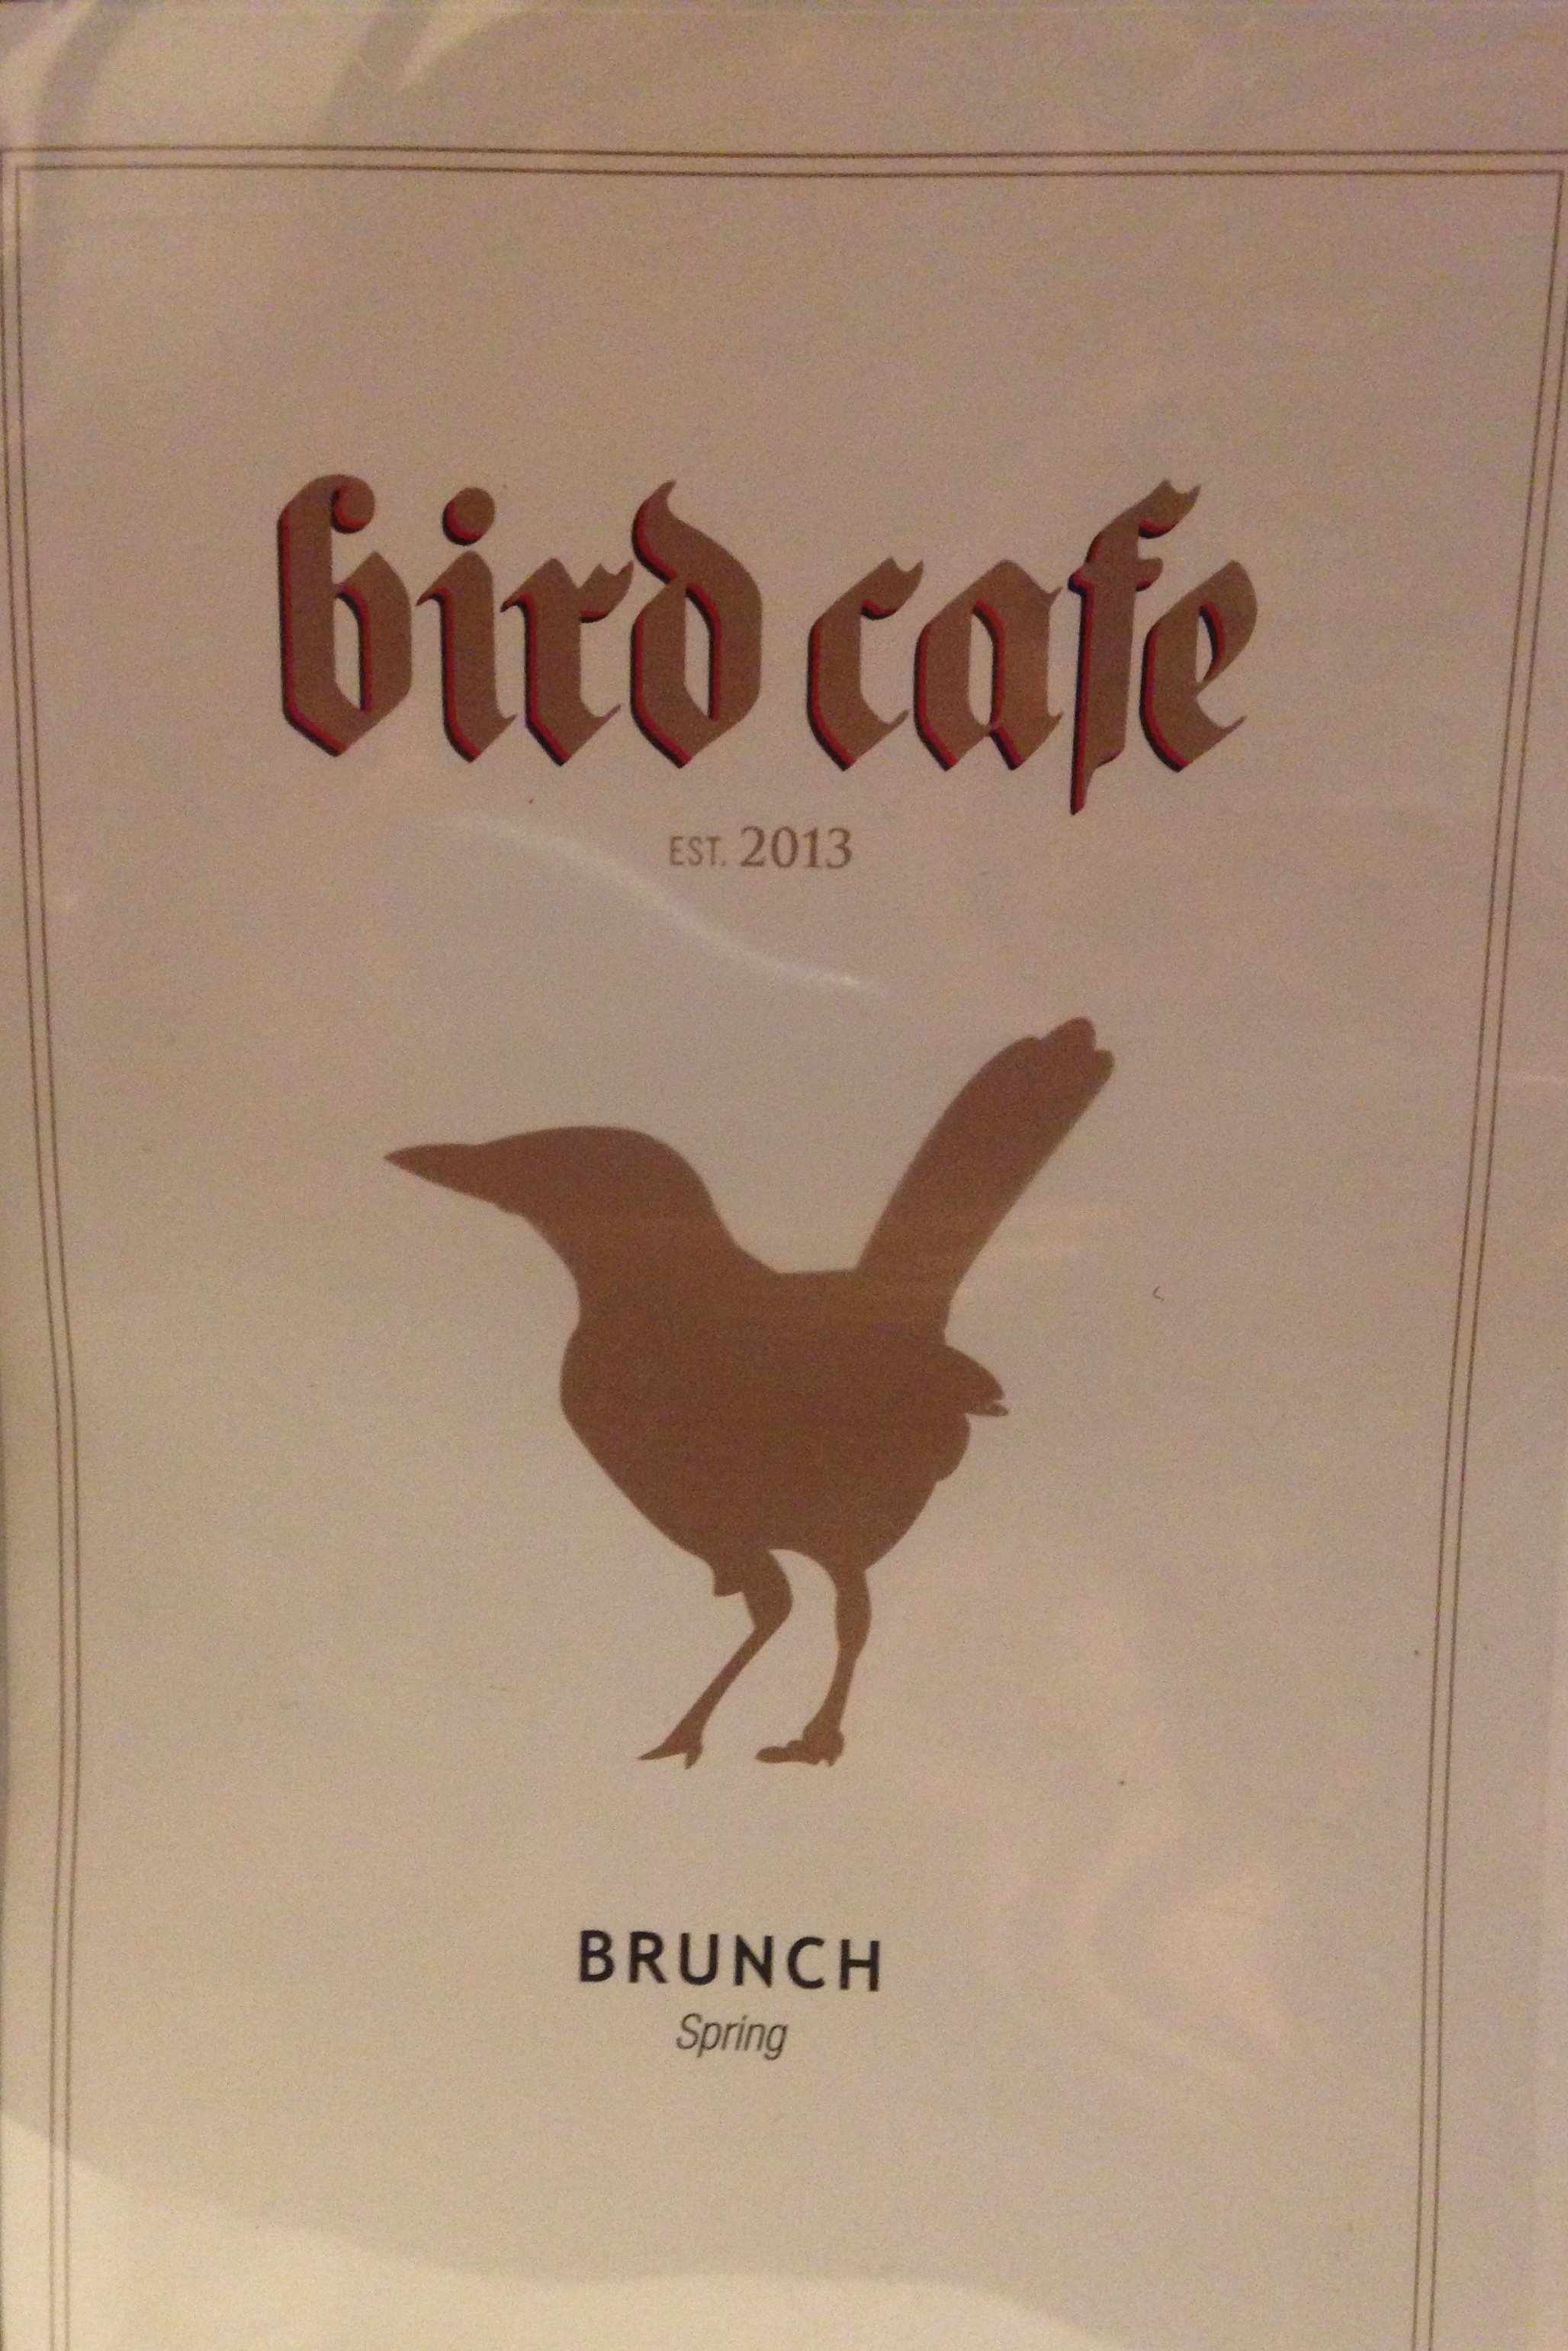 Bird Cafe Brunch Menu